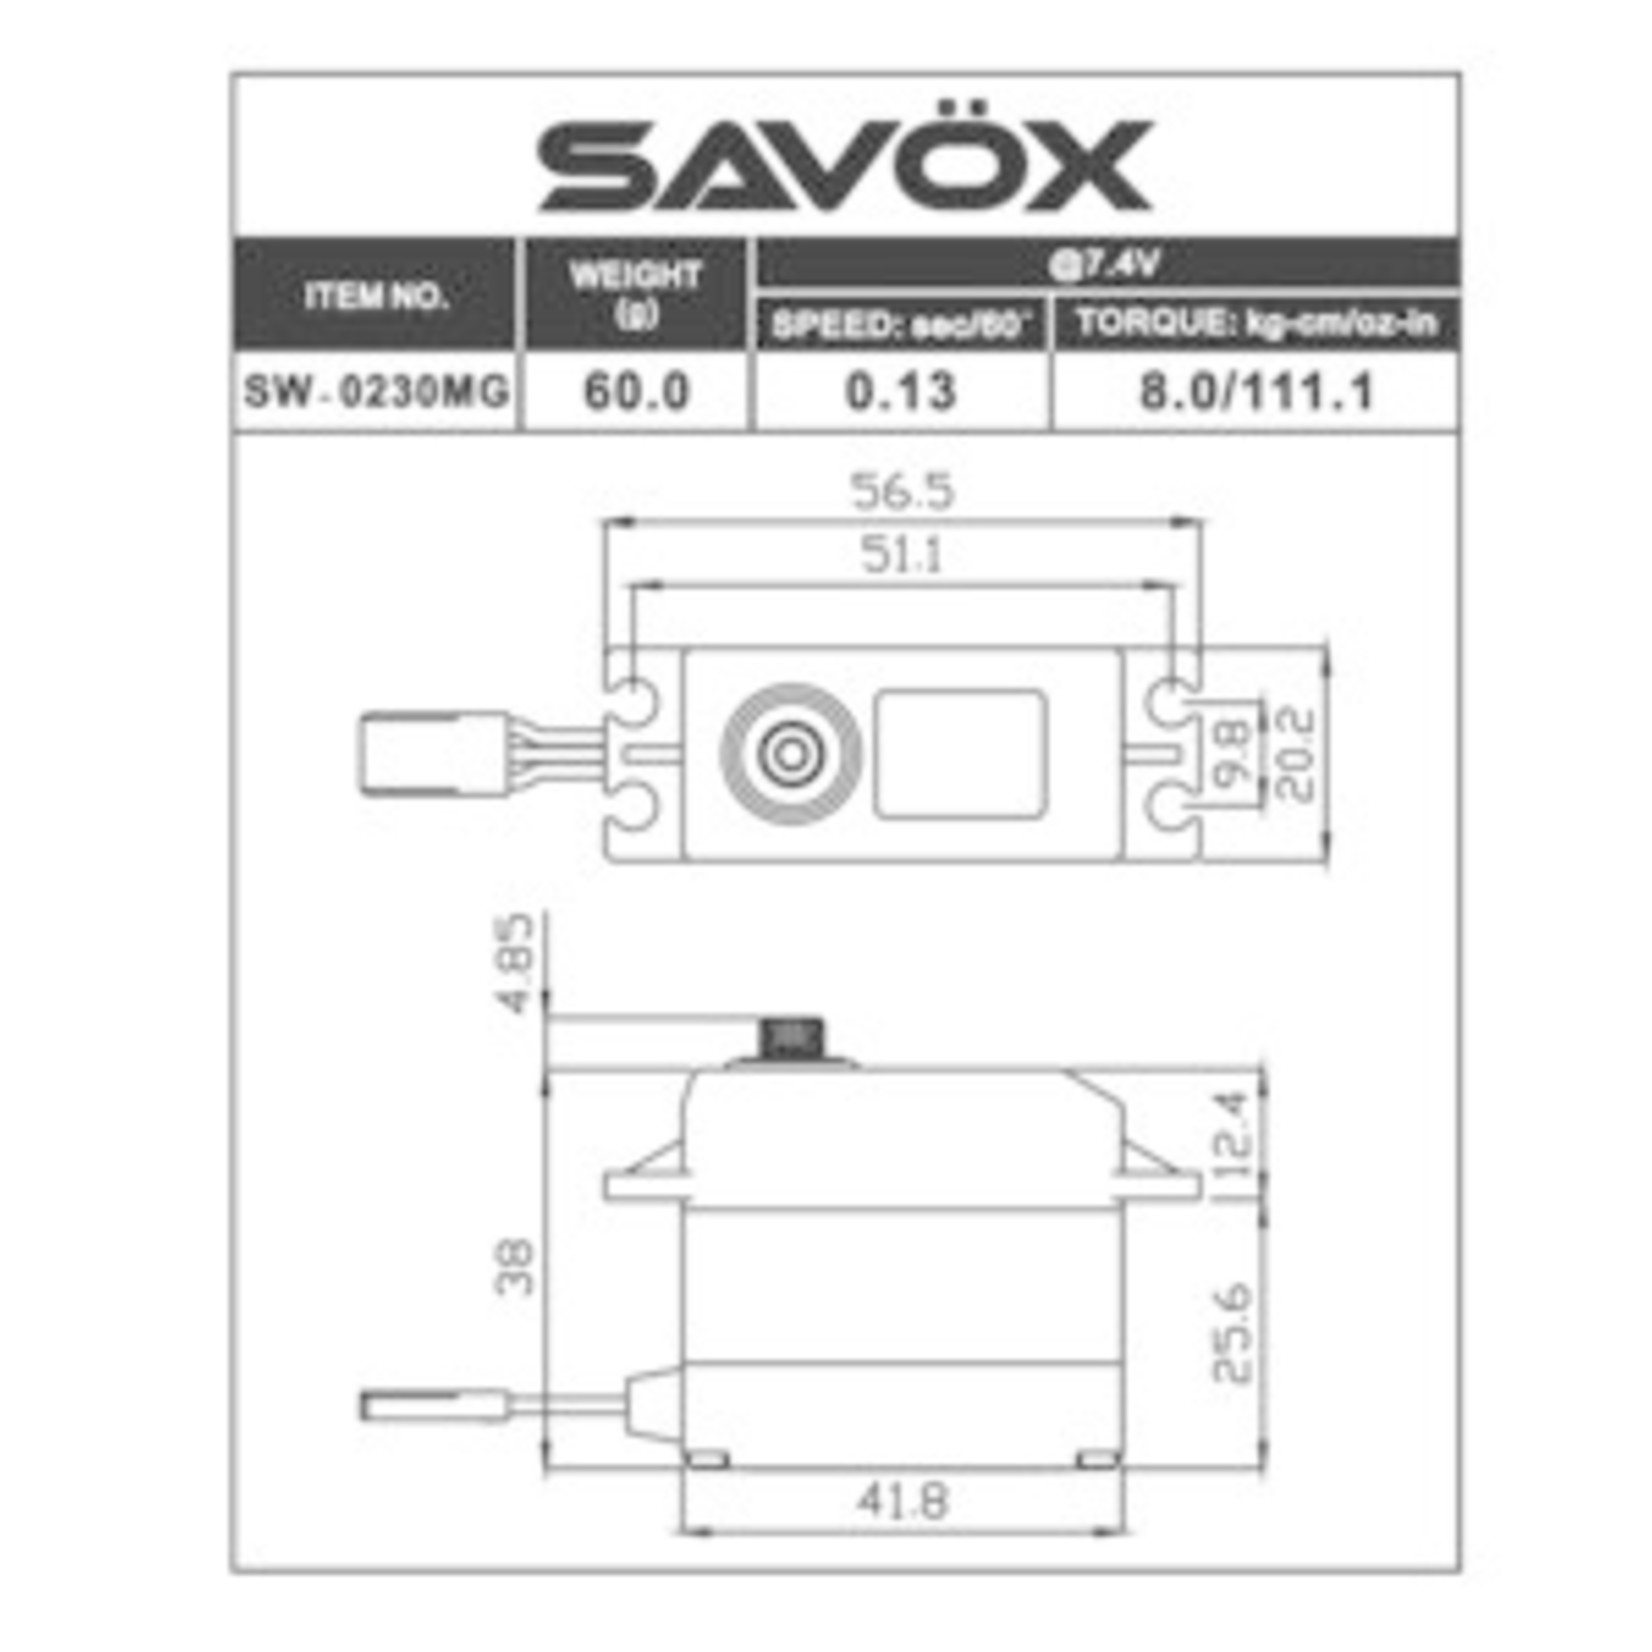 Savox Waterproof Standard Digital Servo 0.13sec / 111.1oz @ 7.4V (DISCONT)